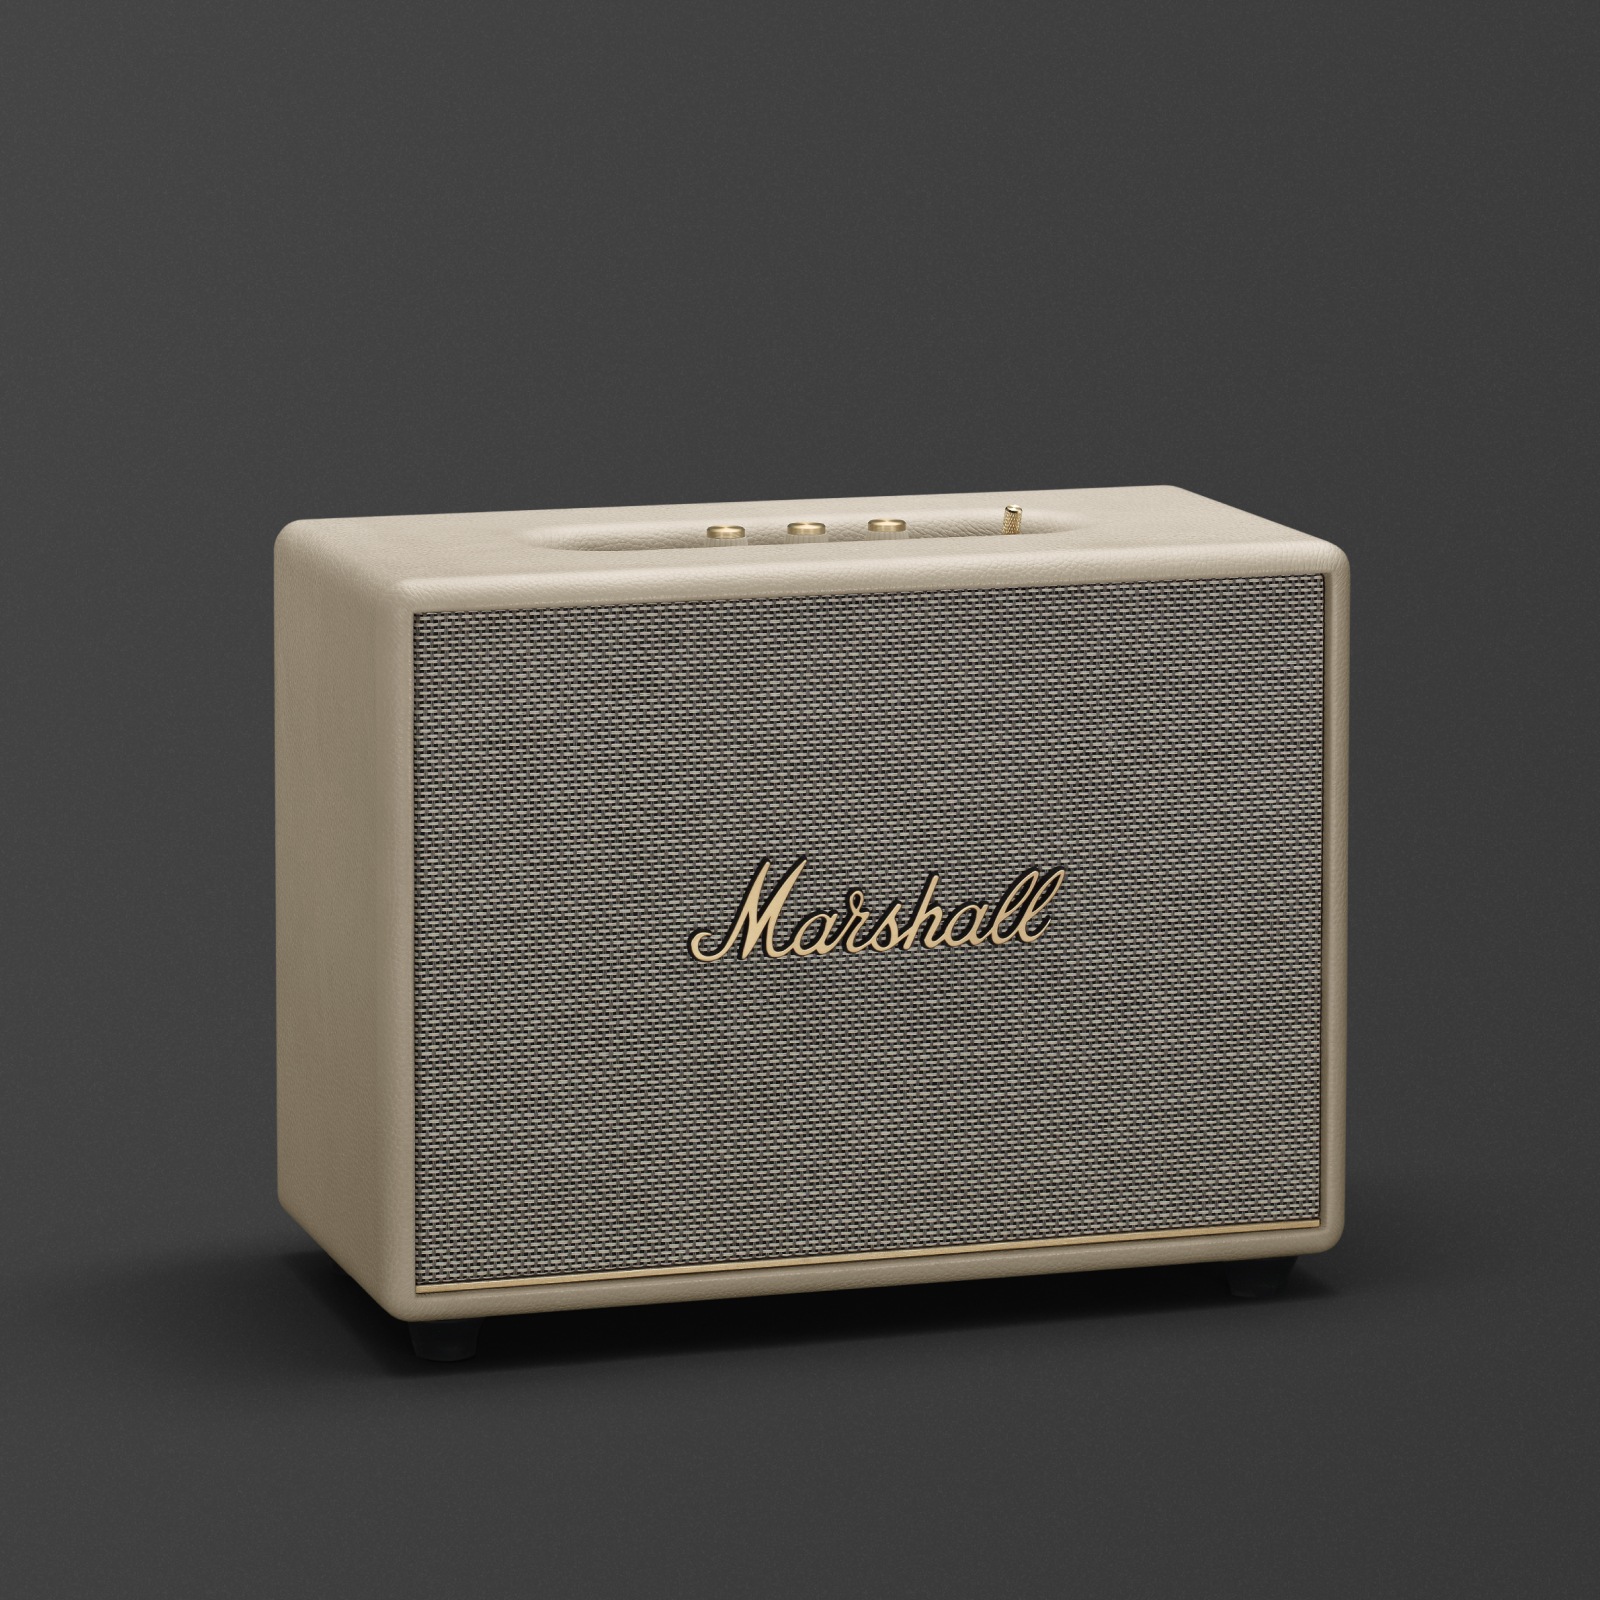 マーシャル Woburn III Cream Bluetoothスピーカー。このMarshallのホームスピーカーは、ホワイトもありますが、Woburn III Creamモデルです。